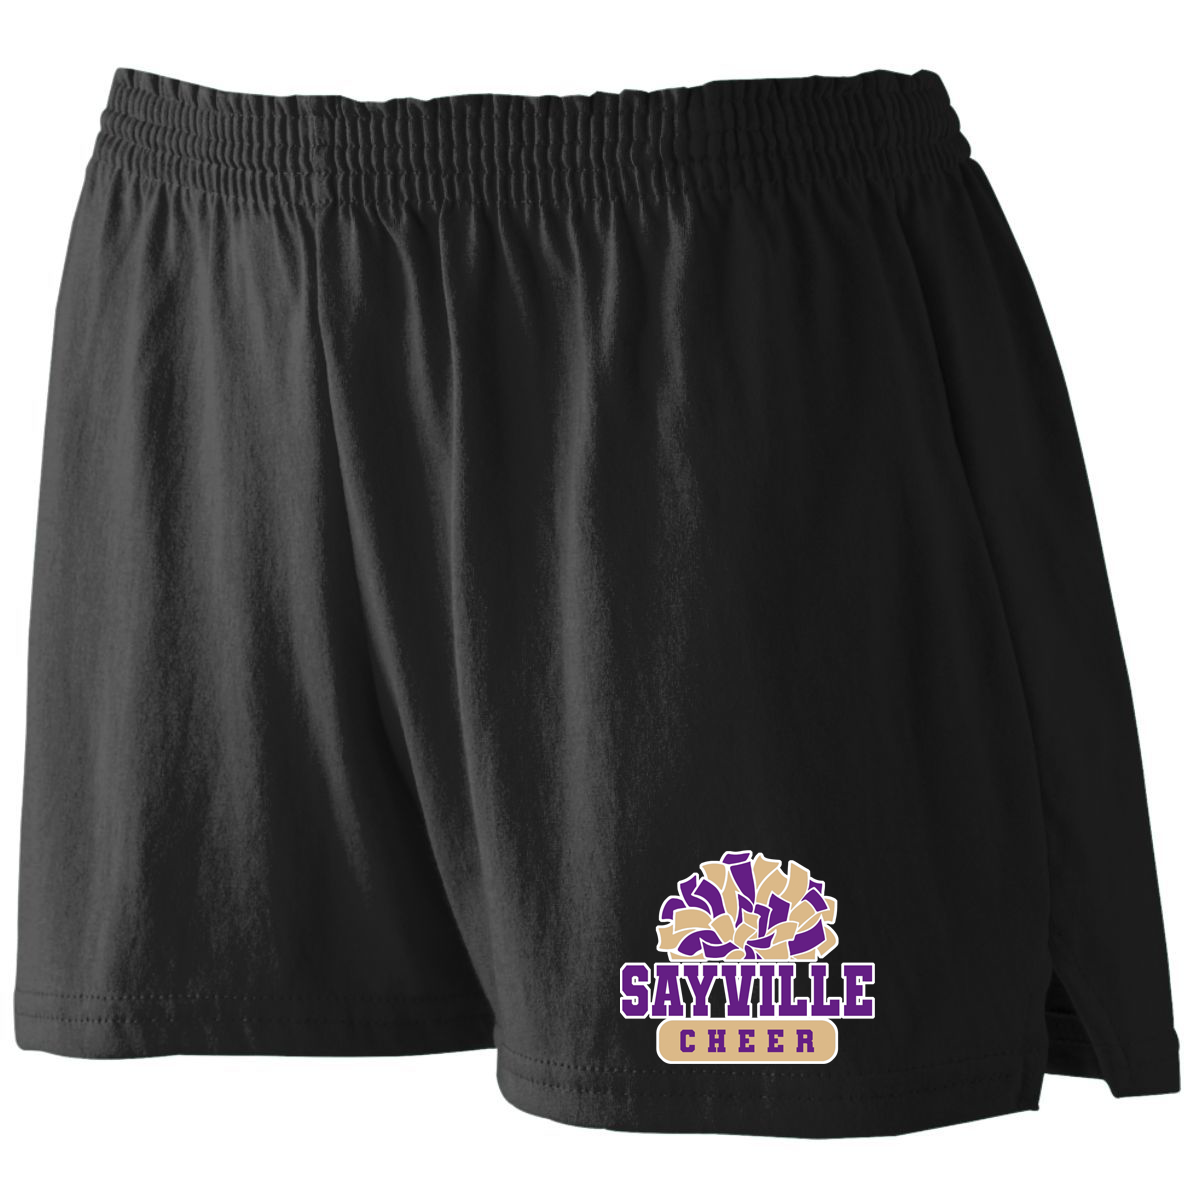 Sayville Cheer Women's Jersey Shorts